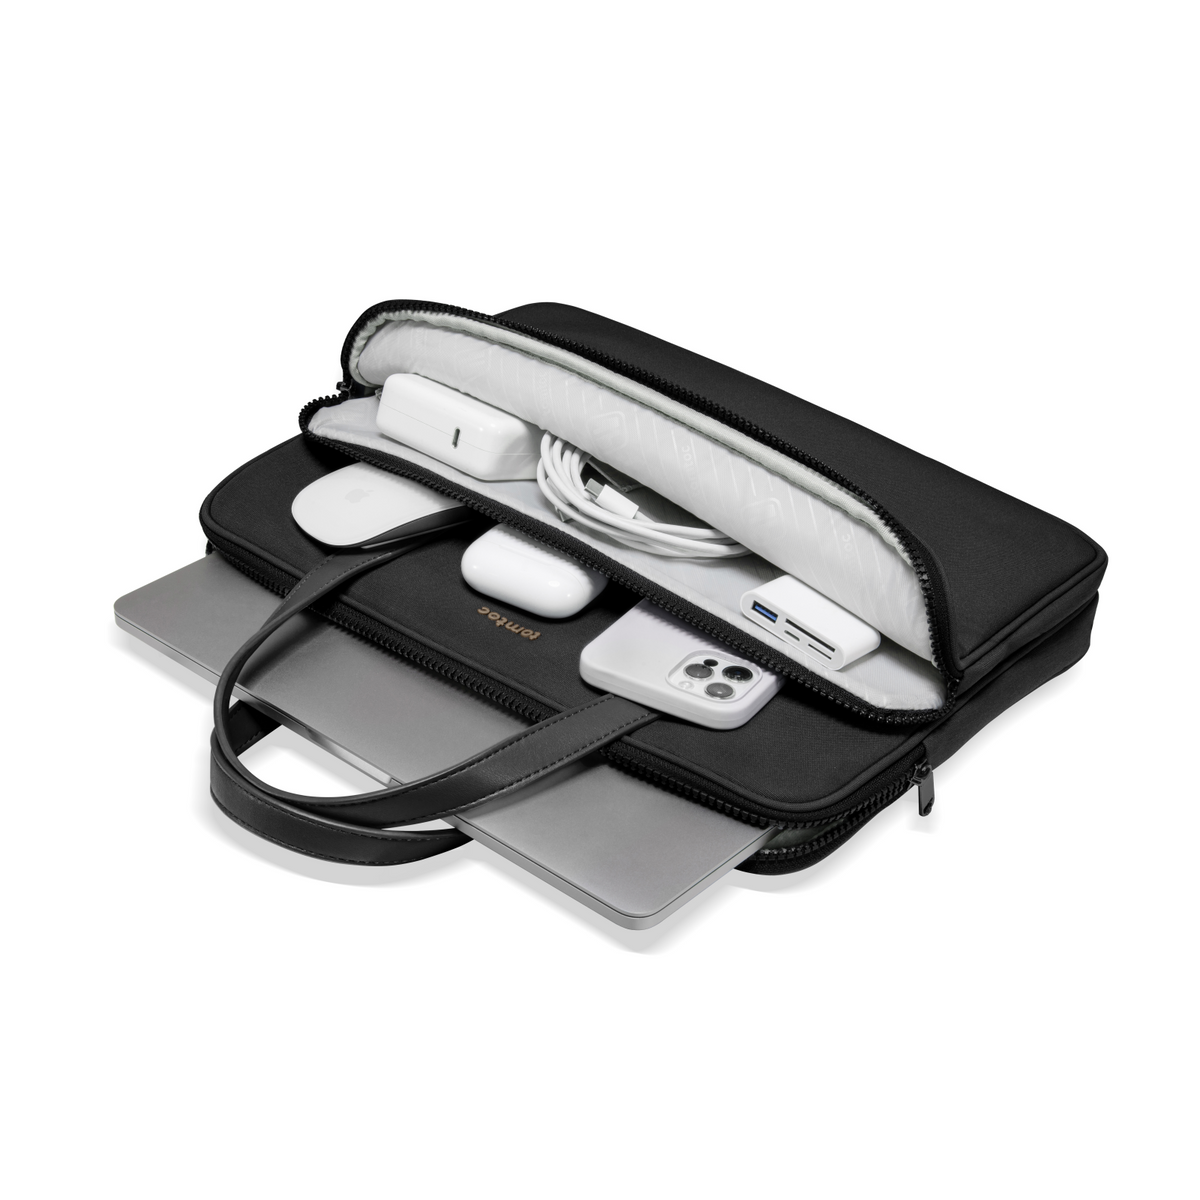 Versatile-A11 Laptop Handbag For 16 inch MacBook Pro M3/M2/M1